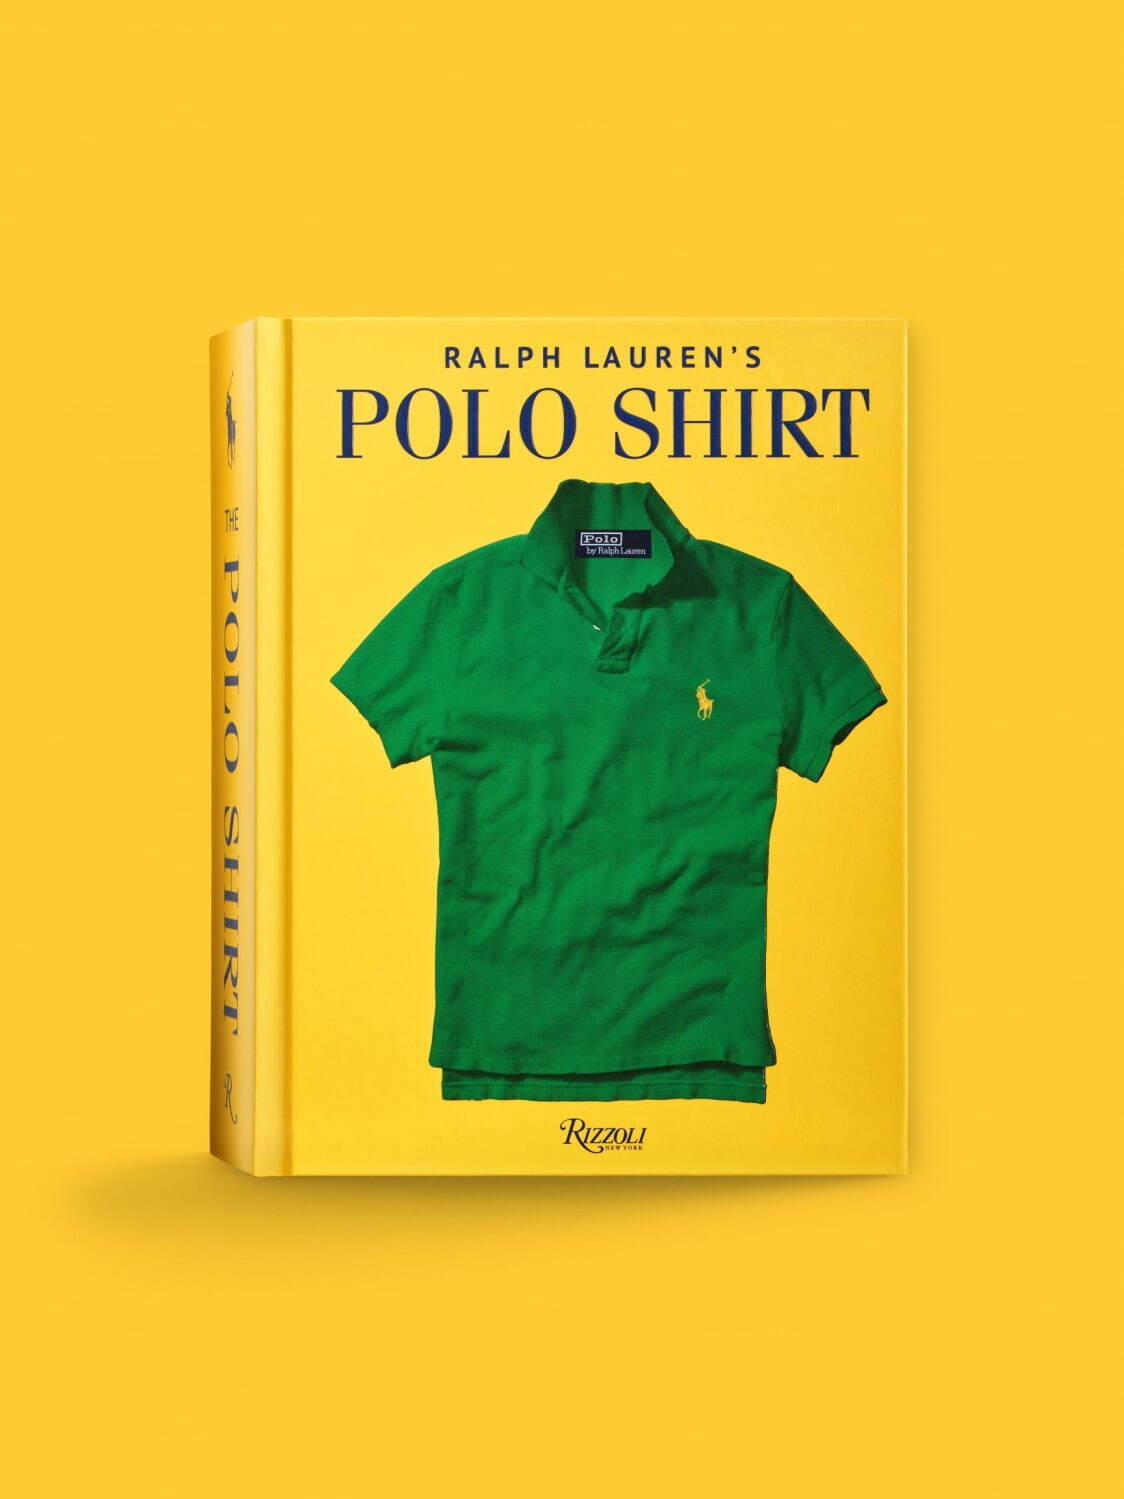 ラルフ ローレンの書籍『Ralph Lauren's Polo Shirt』ポロシャツの歴史を紹介 - ファッションプレス